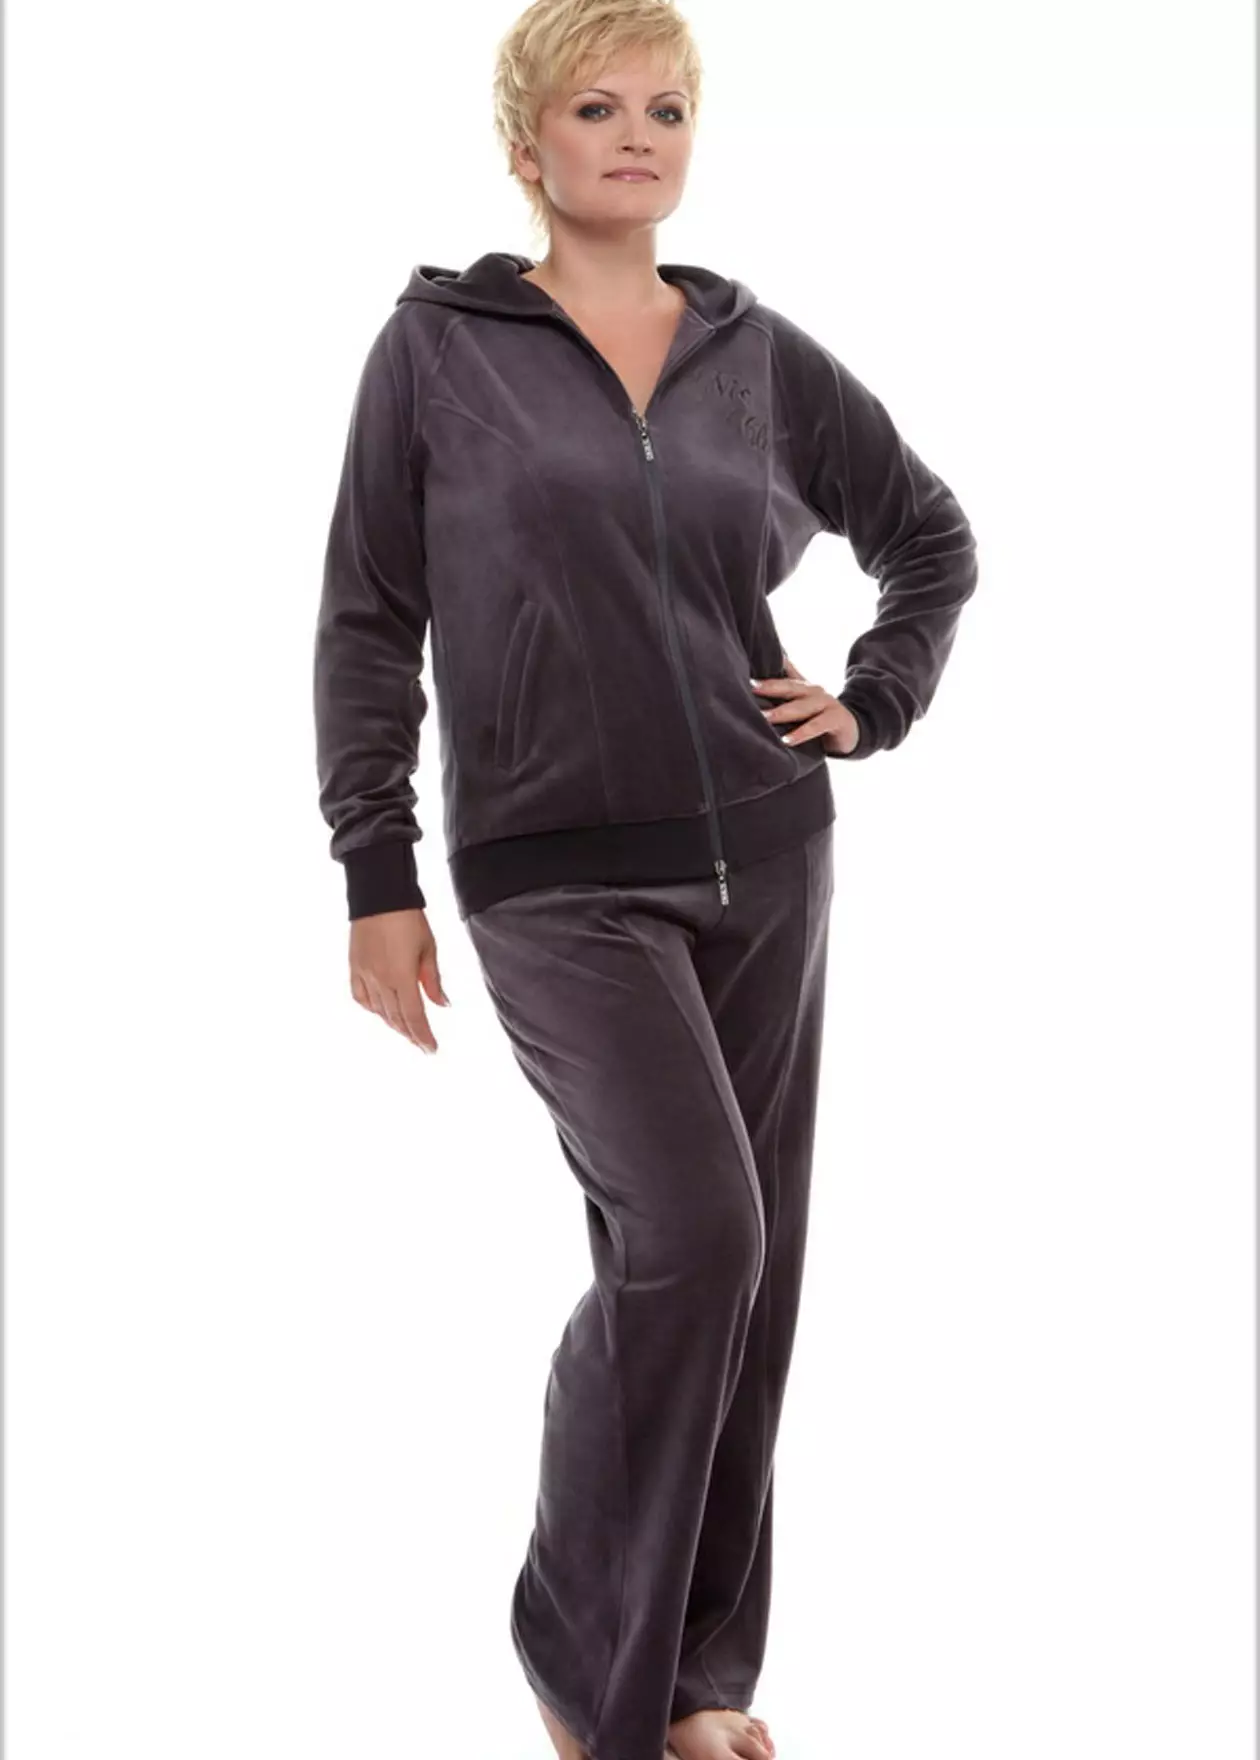 Pakaian olahraga wanita vellar (95 foto): kostum ukuran besar dari velour, bermerek dan rhinestones, dalam warna hitam 1391_26